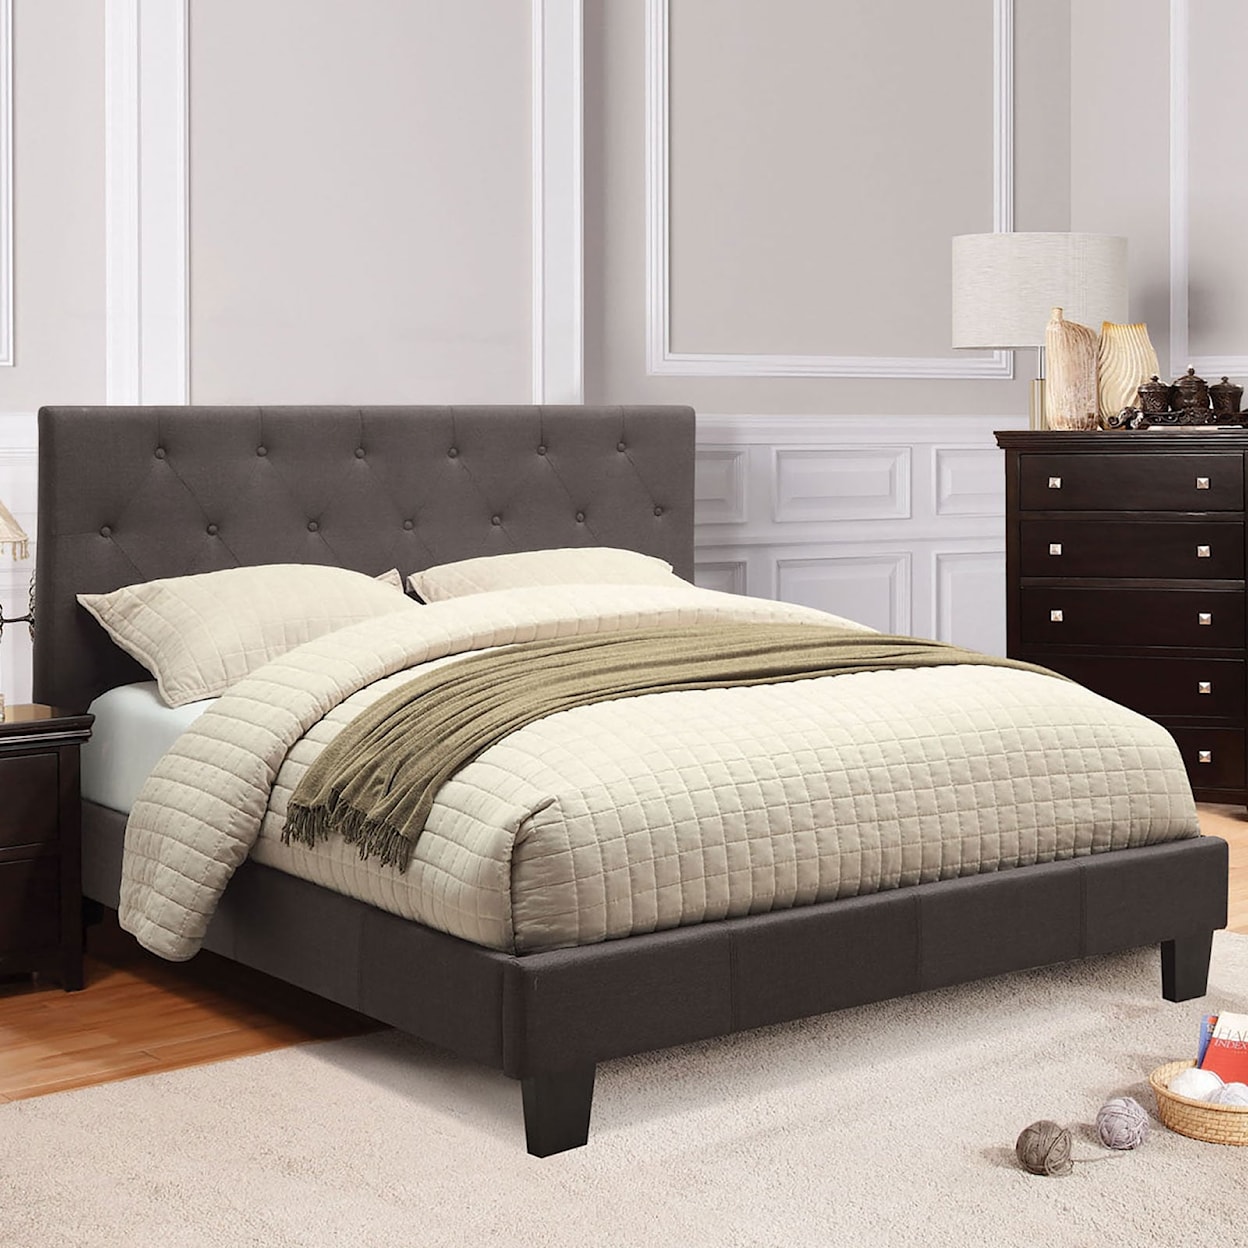 Furniture of America Leeroy Queen Bed